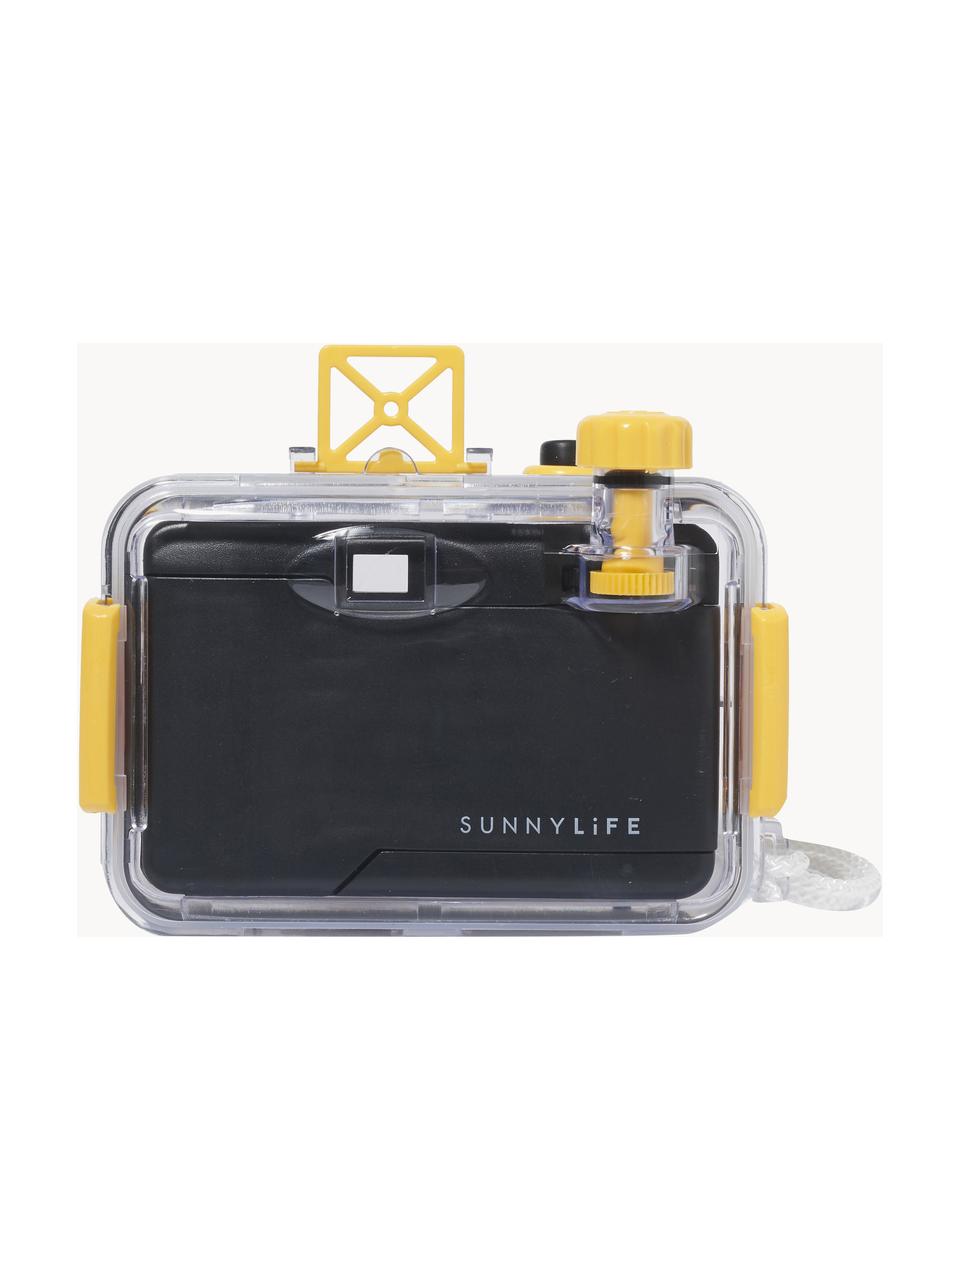 Podvodní fotoaparát s vodotěsným pouzdrem Rio Sun, ABS umělá hmota, Tlumeně bílá, broskvová, žlutá, Š 15 cm, V 11 cm